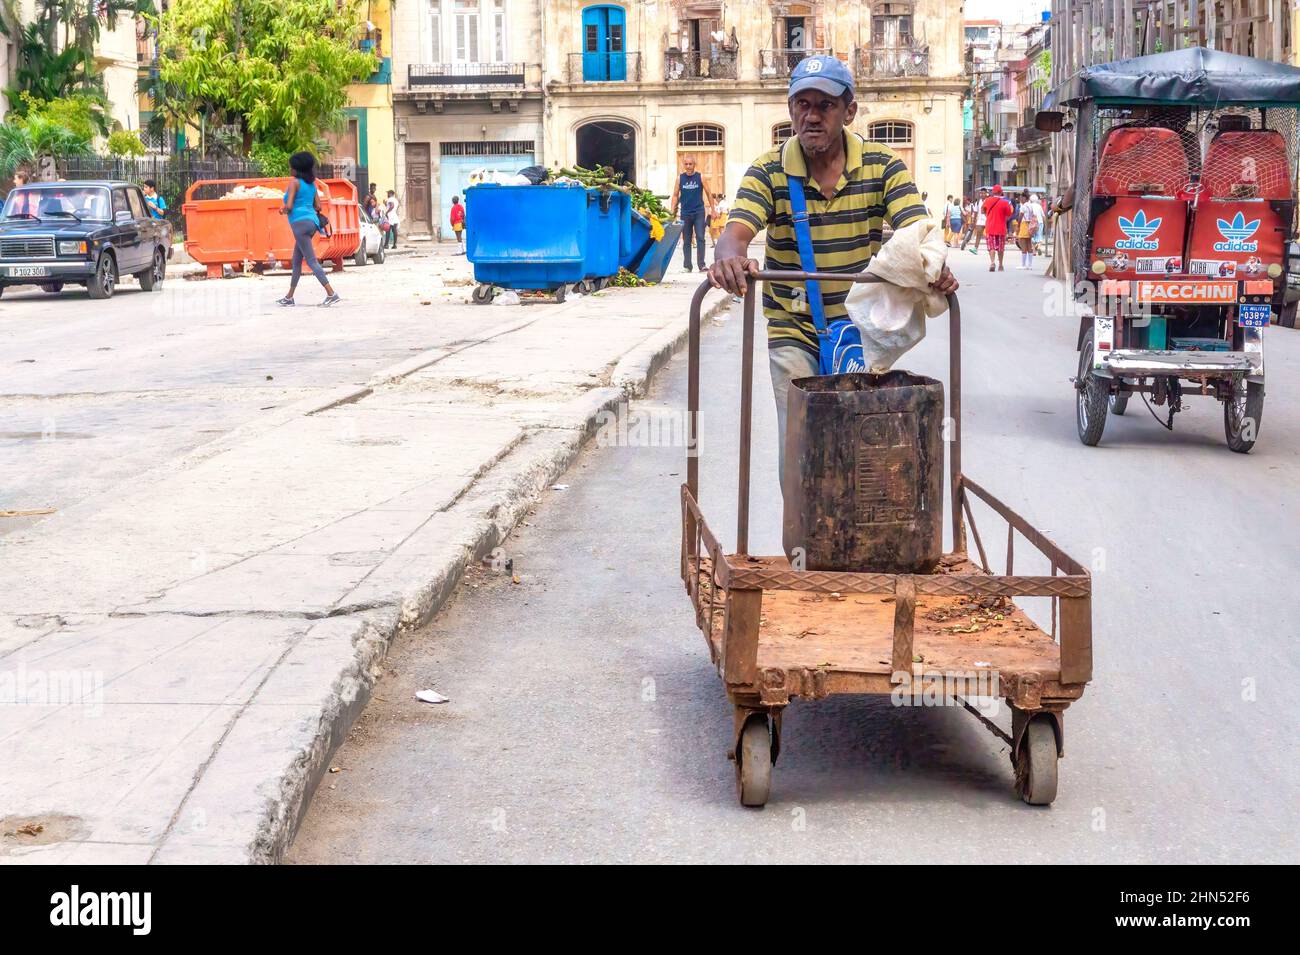 Ein afro-karibischer Mann schiebt einen Wagen in eine Stadtstraße. Im Hintergrund sind ein bicitaxi und ein Mülleimer zu sehen. Stockfoto